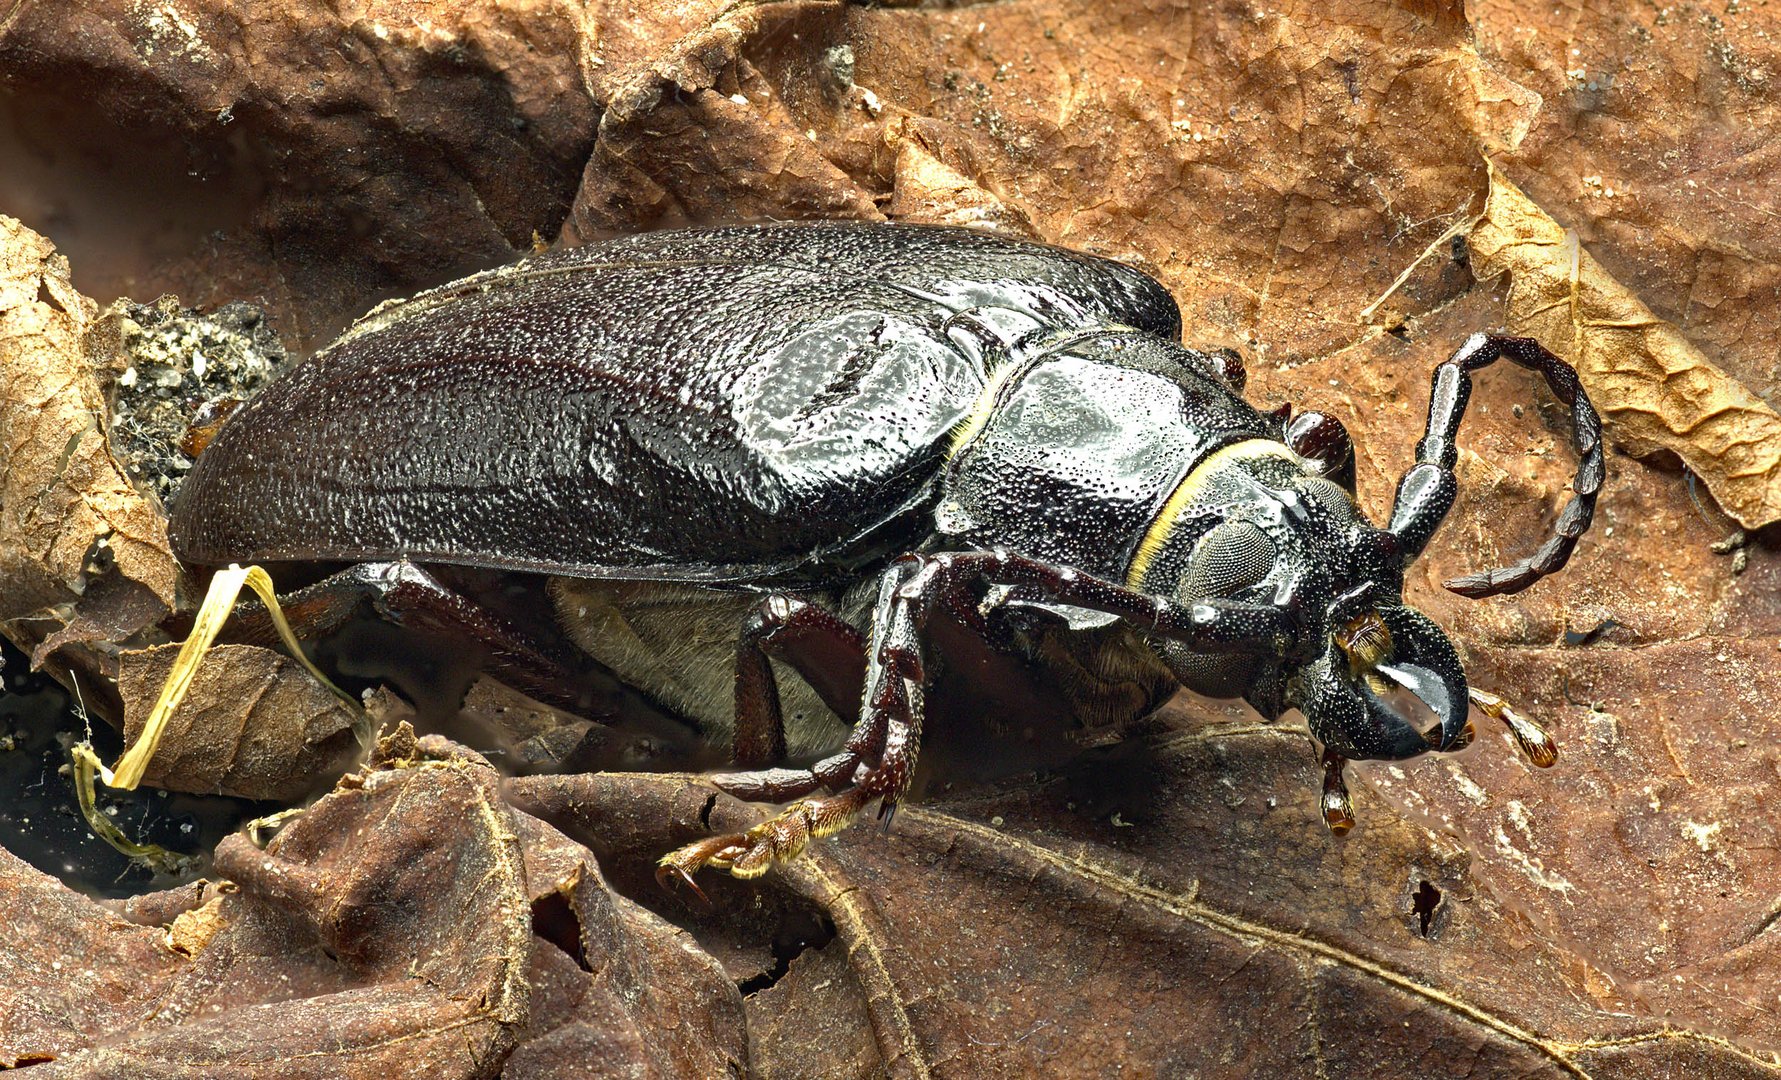 Sägebock Käfer